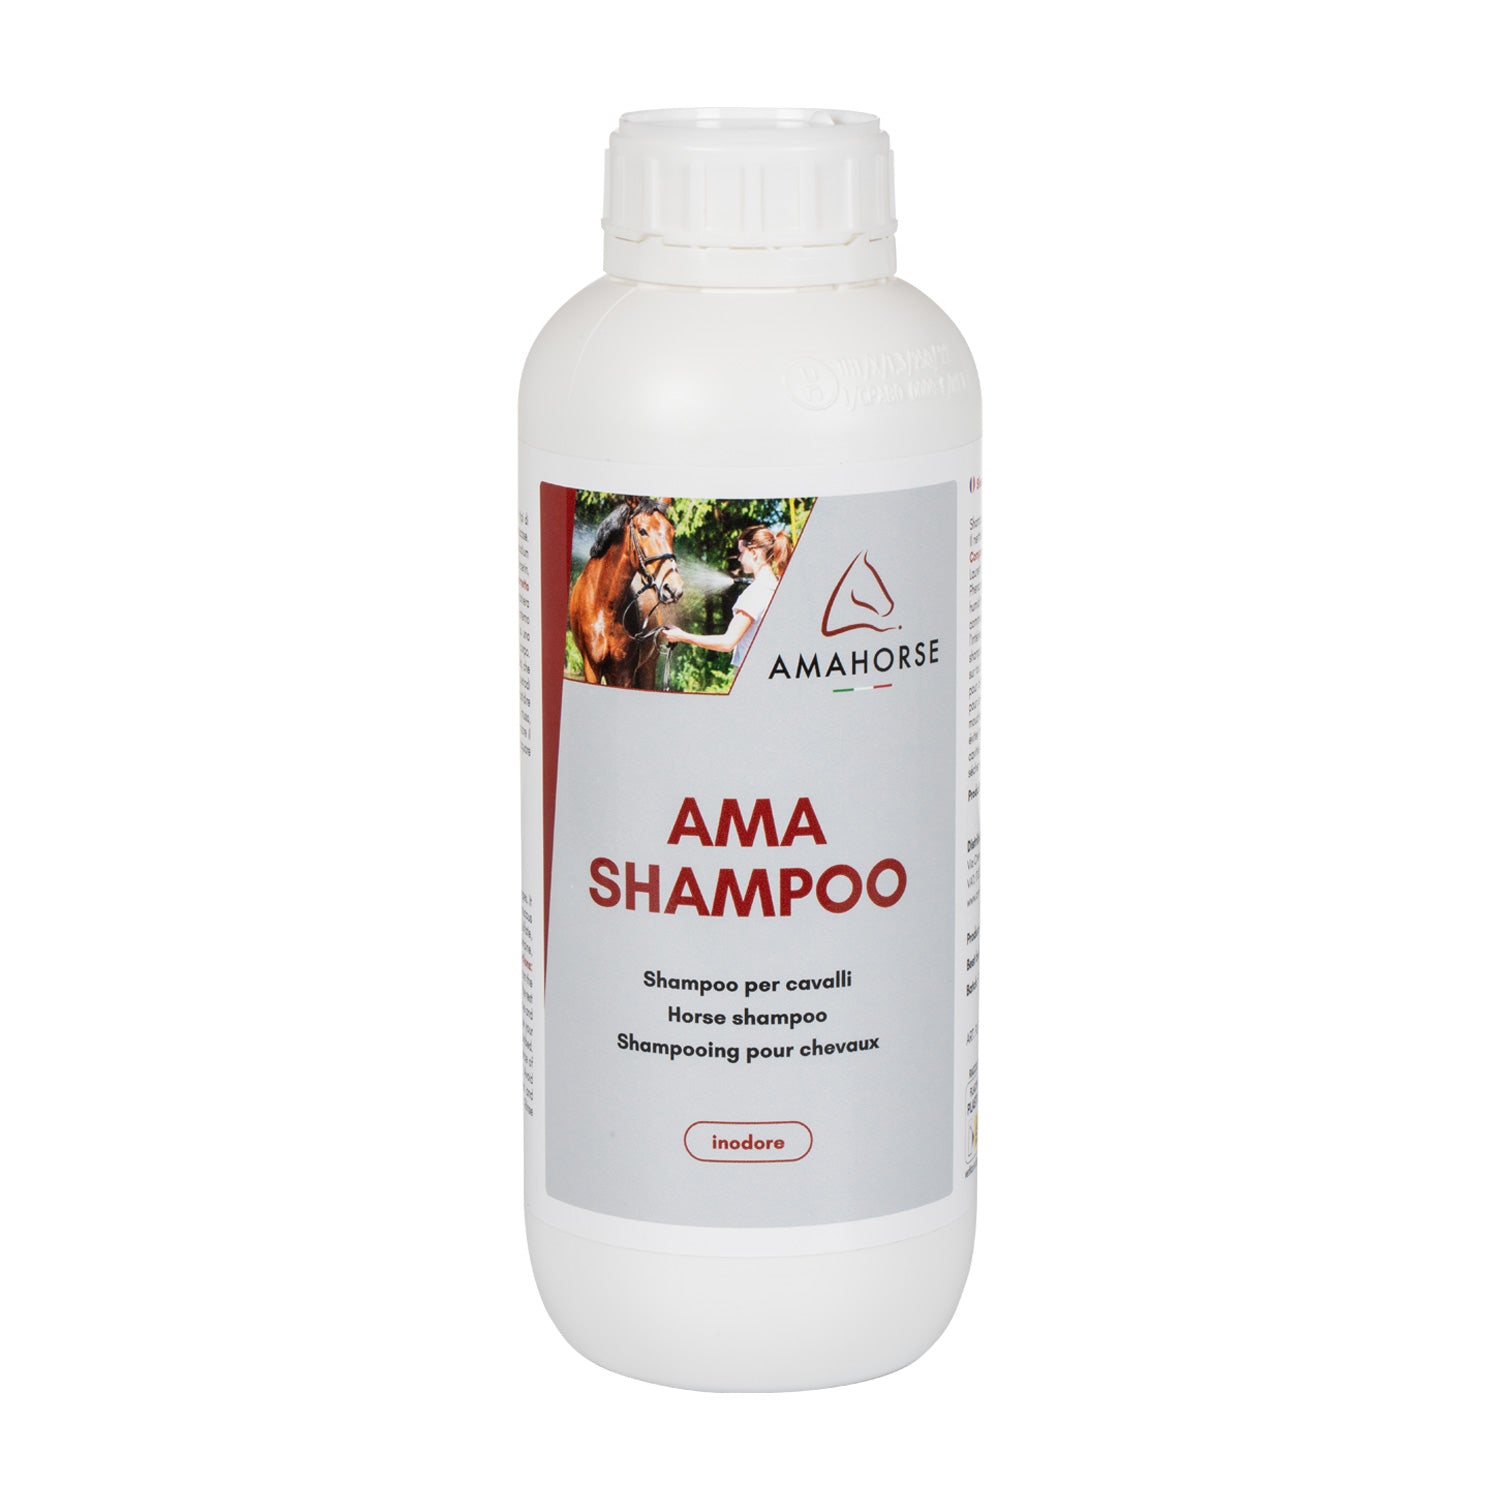 Ama Shampoo per cavalli: rivitalizzante per il pelo e dona un blillante aspetto setoso